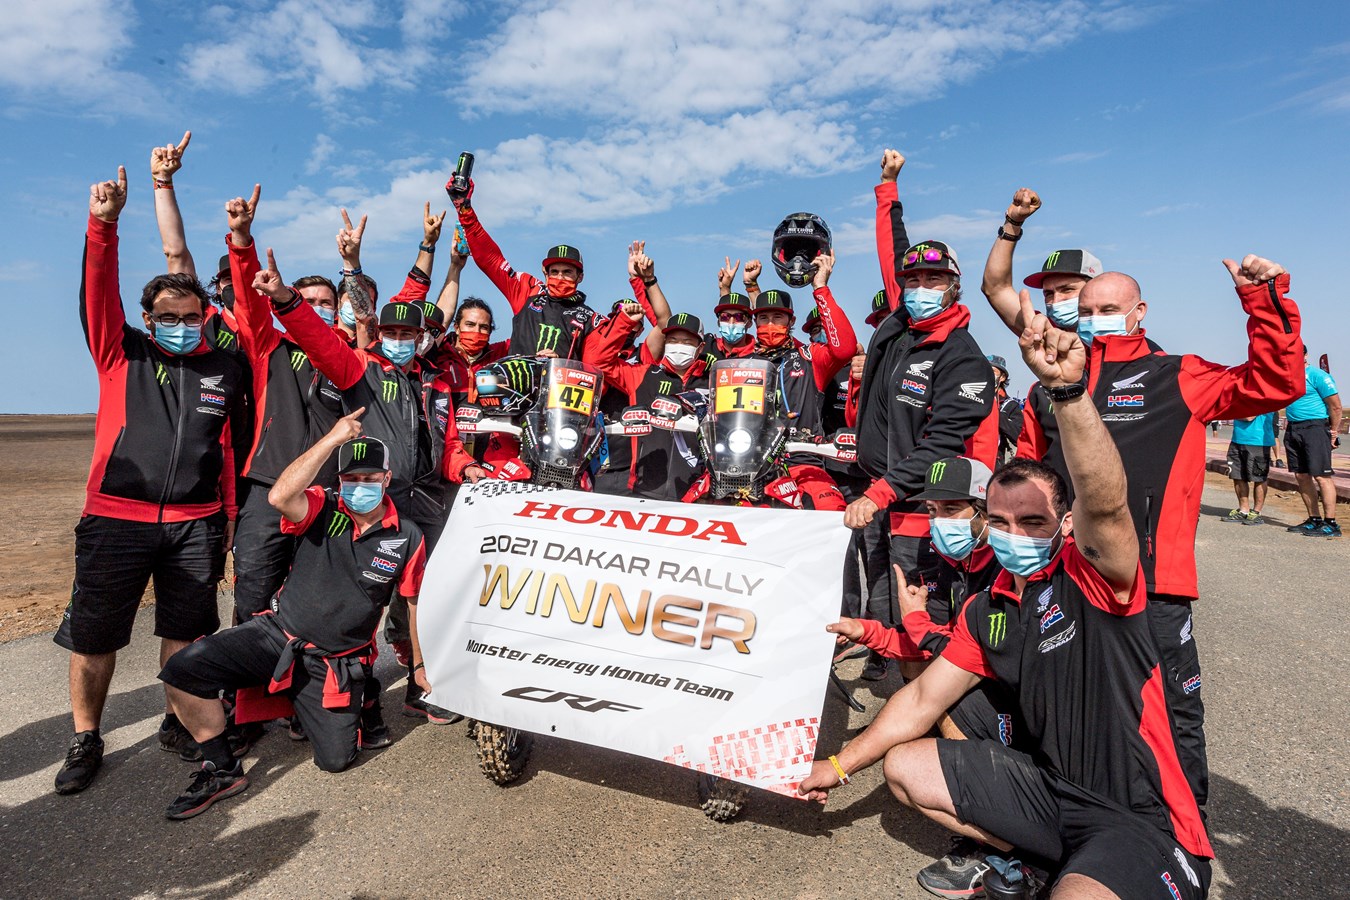 Kevin Benavides remporte l'édition 2021 du Dakar, seconde victoire consécutive pour Honda